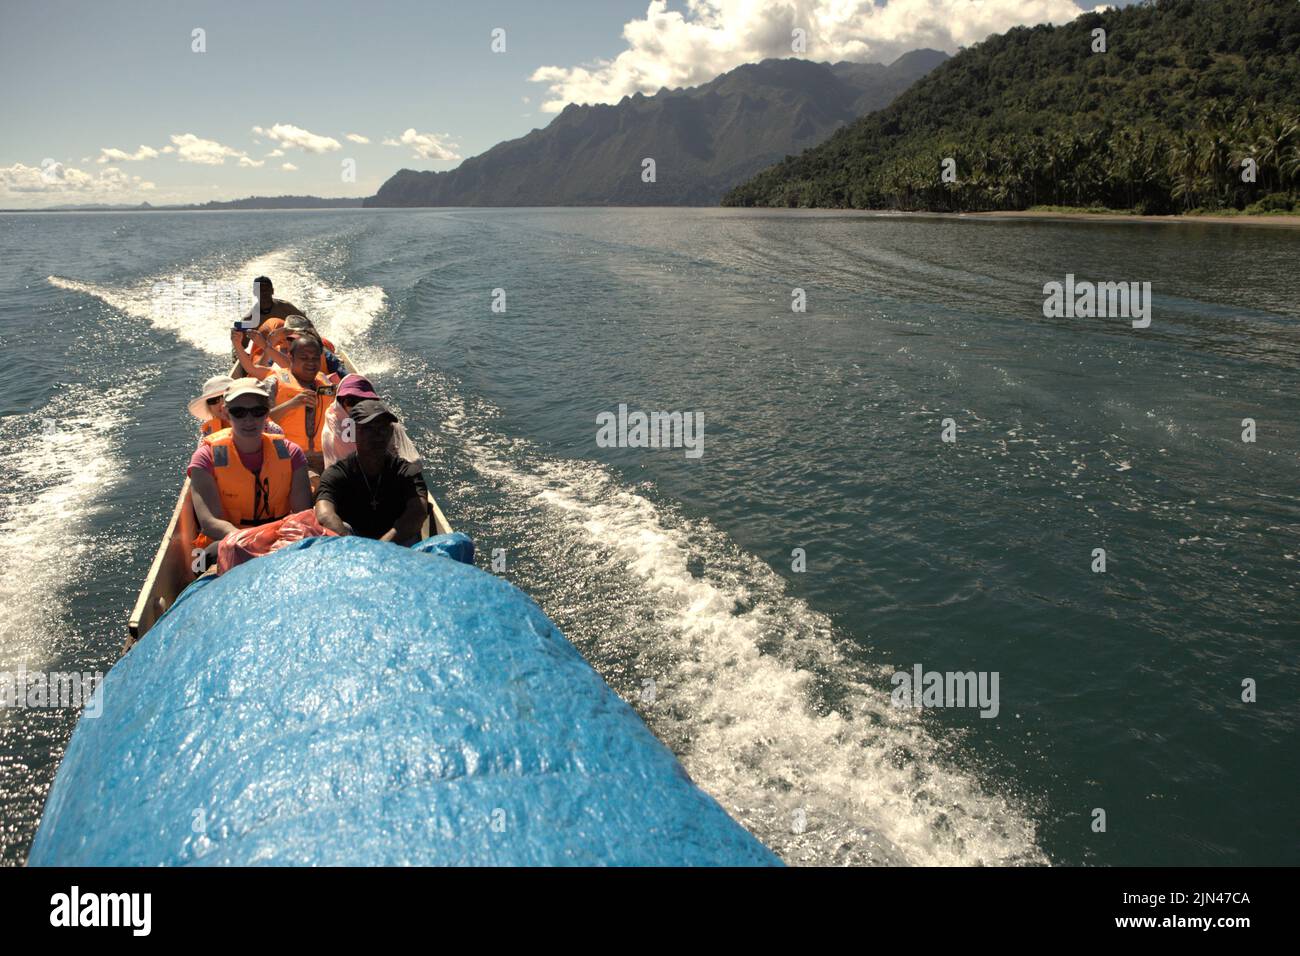 Una barca che trasporta i turisti sta navigando sull'acqua al largo della costa dell'isola di Seram, vicino al villaggio morale in Seram Utara Barat, Maluku Tengah, Maluku, Indonesia. Foto Stock